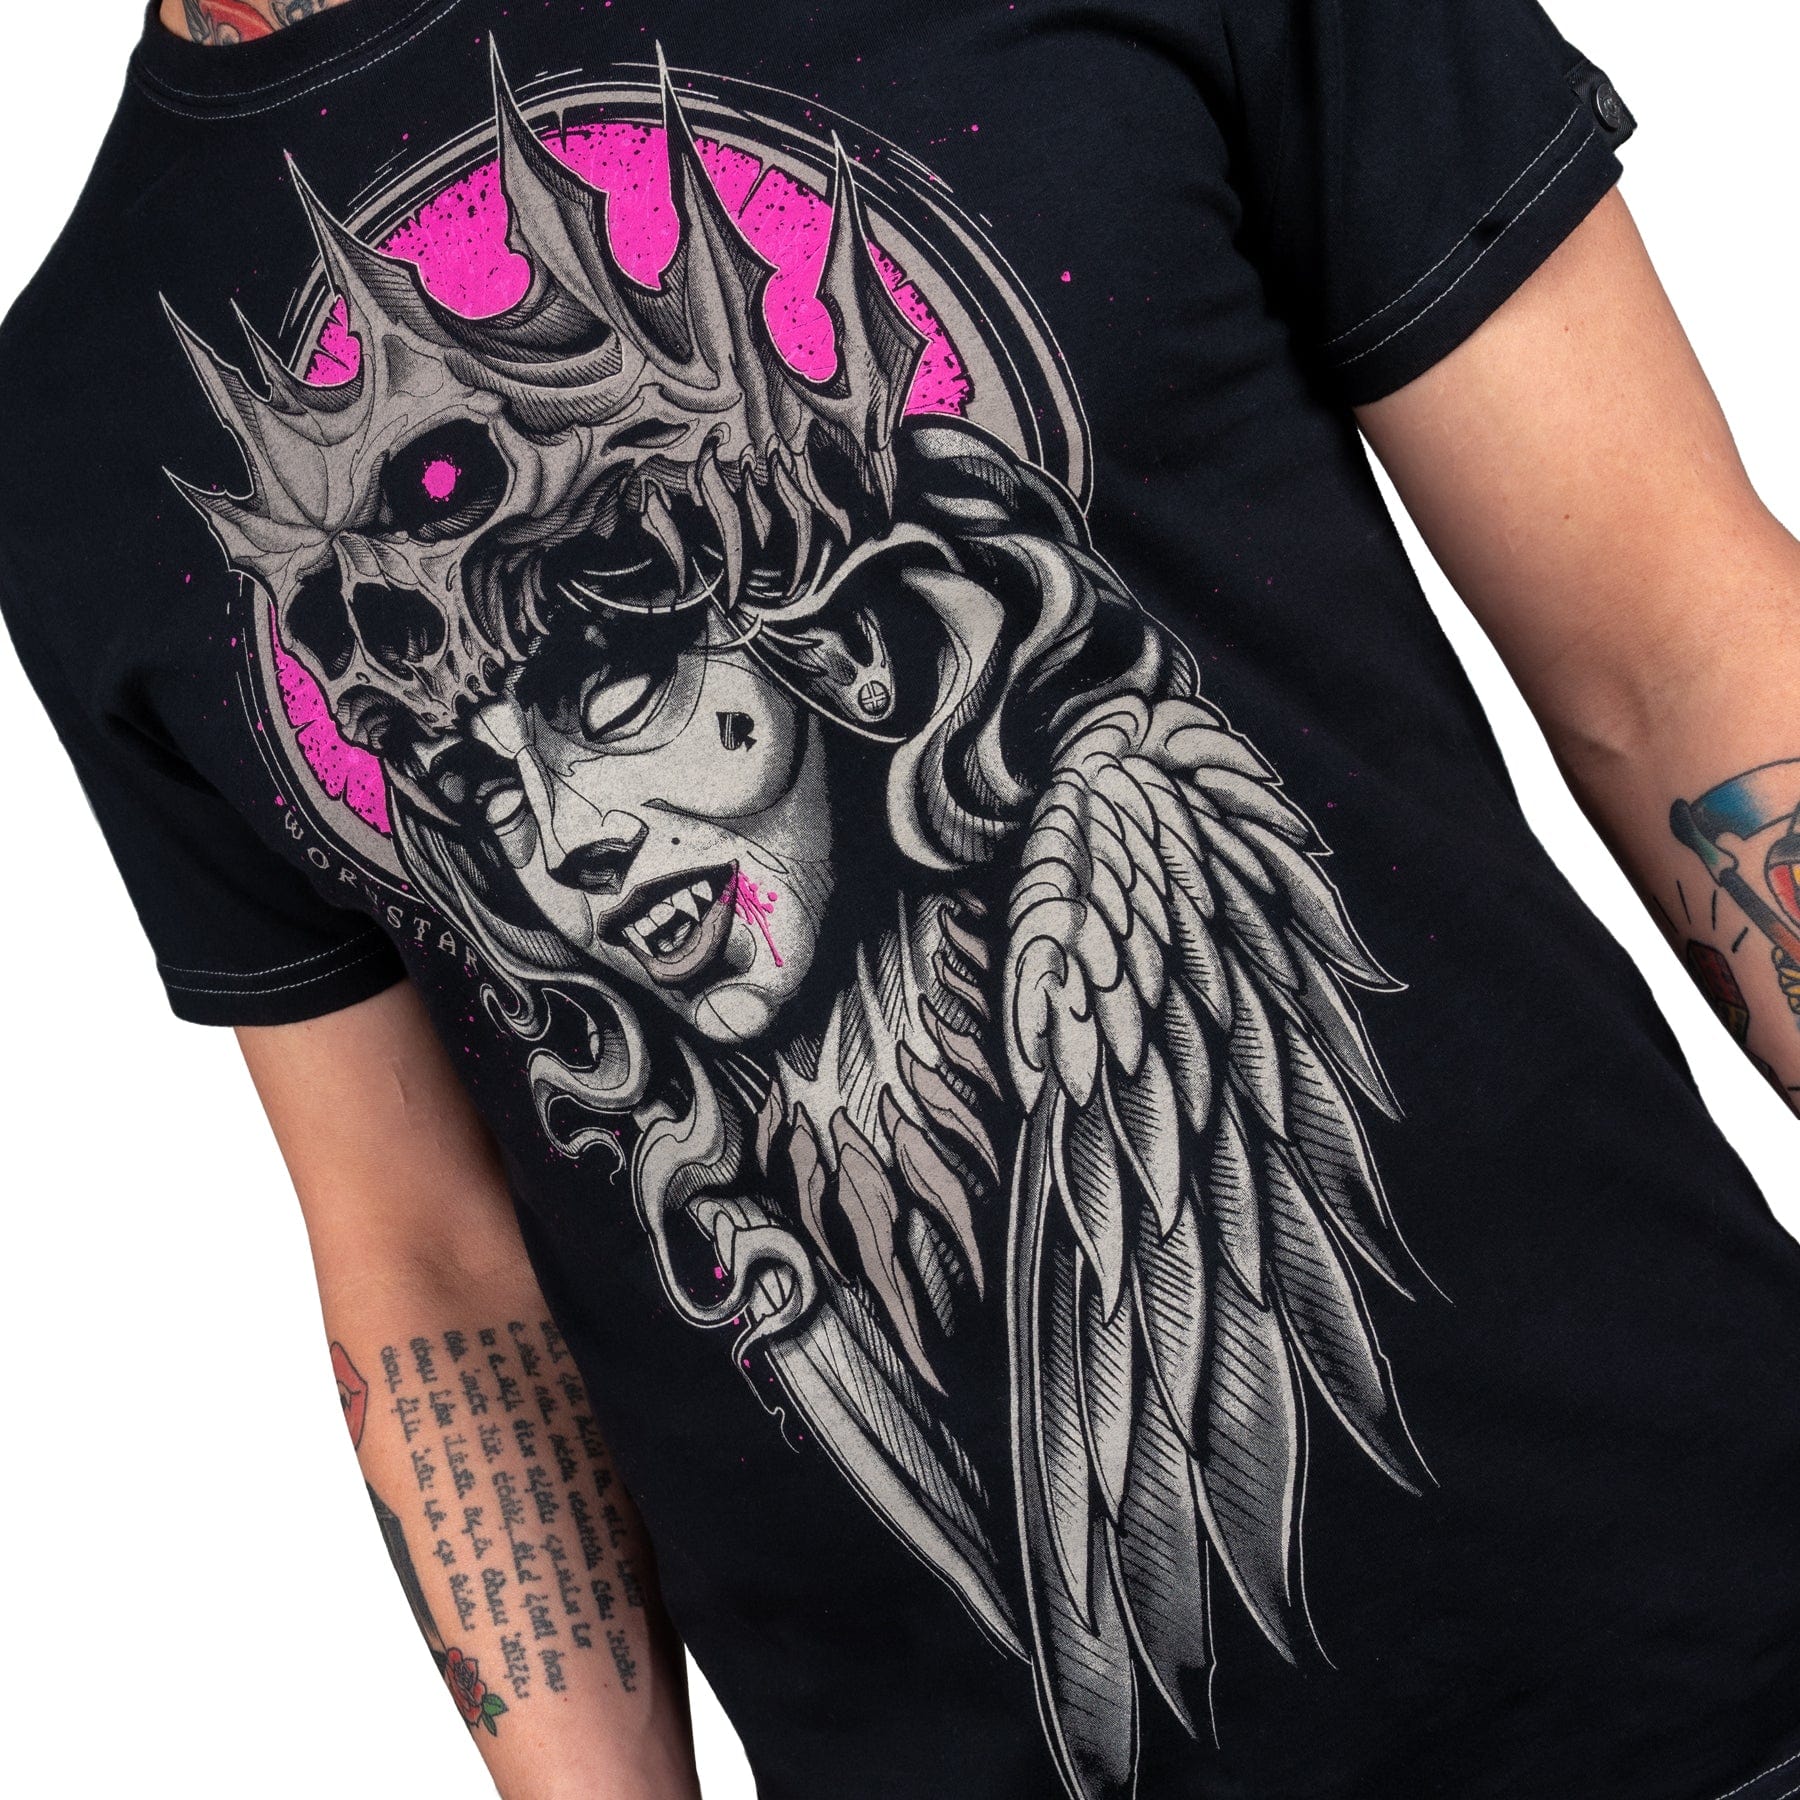 Artist Asylum Collection T-Shirt Vampire Queen Tee